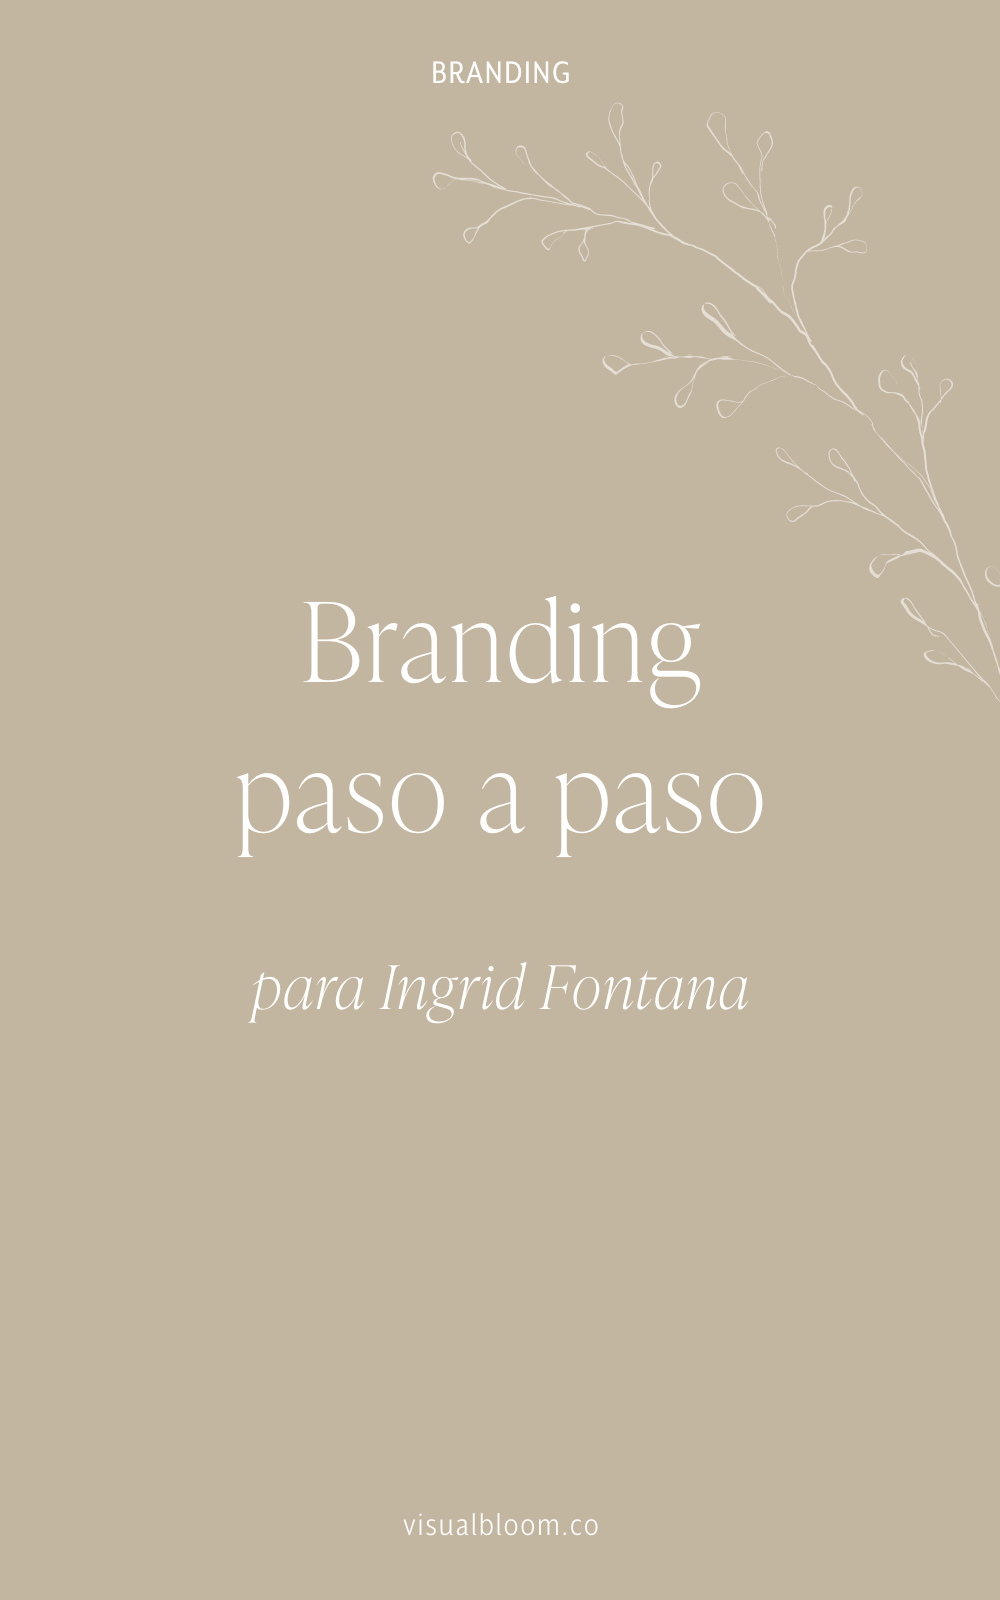  En este post te desvelo el proceso de diseño detrás del diseño de identidad corporativa para Ingrid Fontana. #DiseñoIdentidad #branding #emprendimiento #blogger #negociosonline #logo #MarcaPersonal 